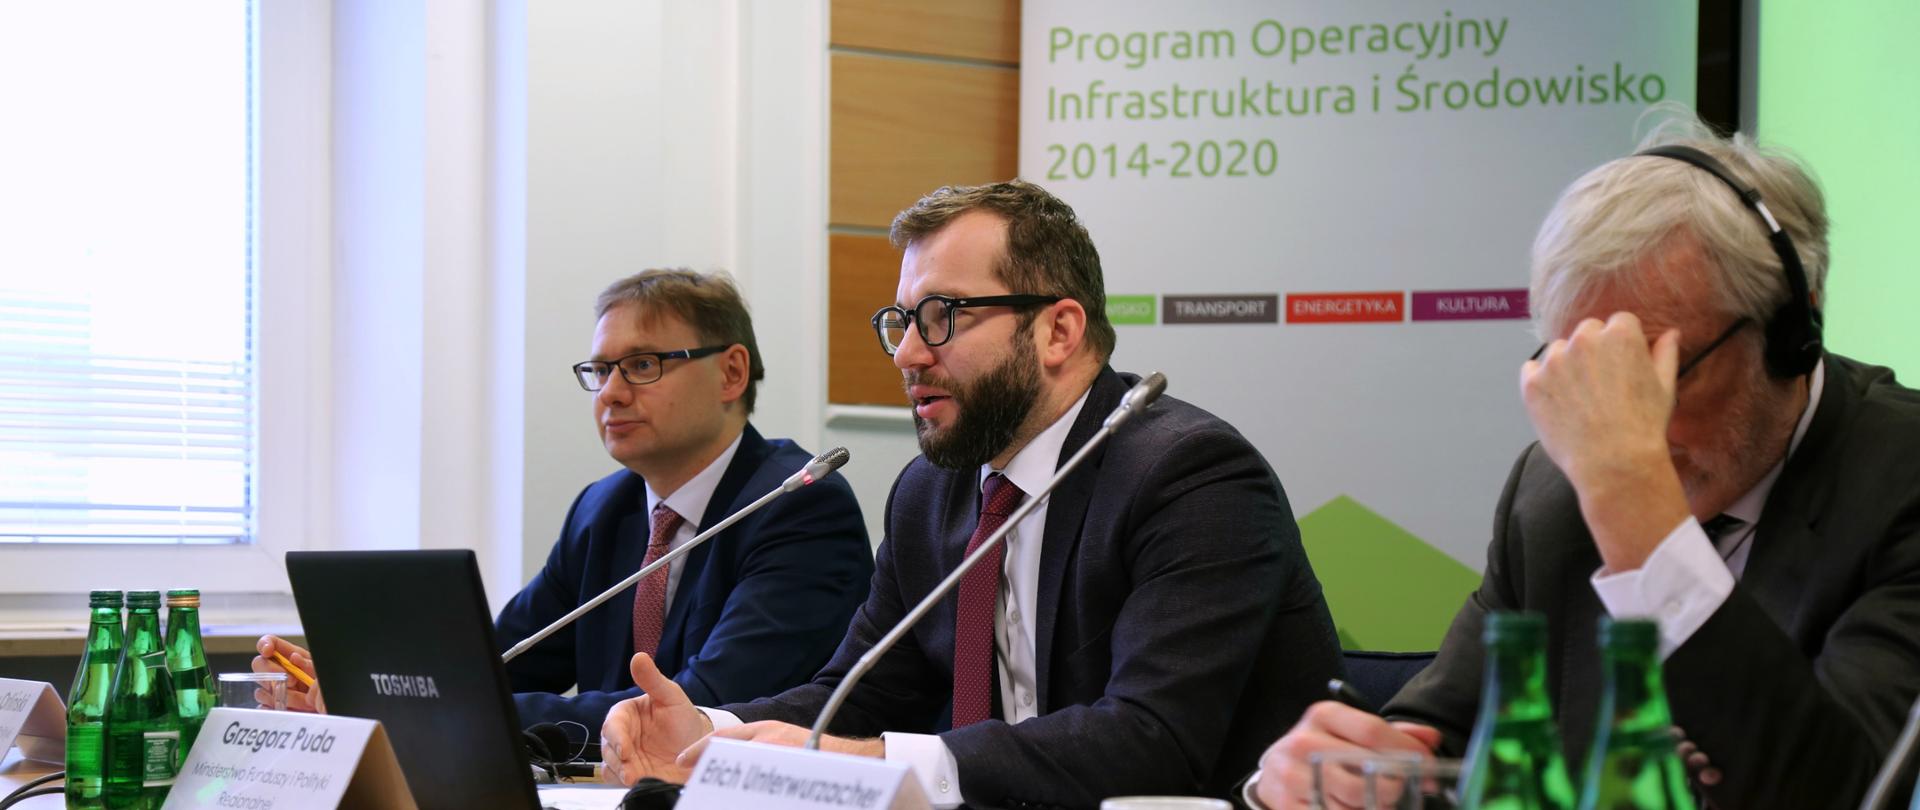 Minister Pudy, dyrektor Orliński i komisarz Underwurzacher siedzą przy stole, za nimi znajduje się napis "Program Infrastruktura i Środowisko" 